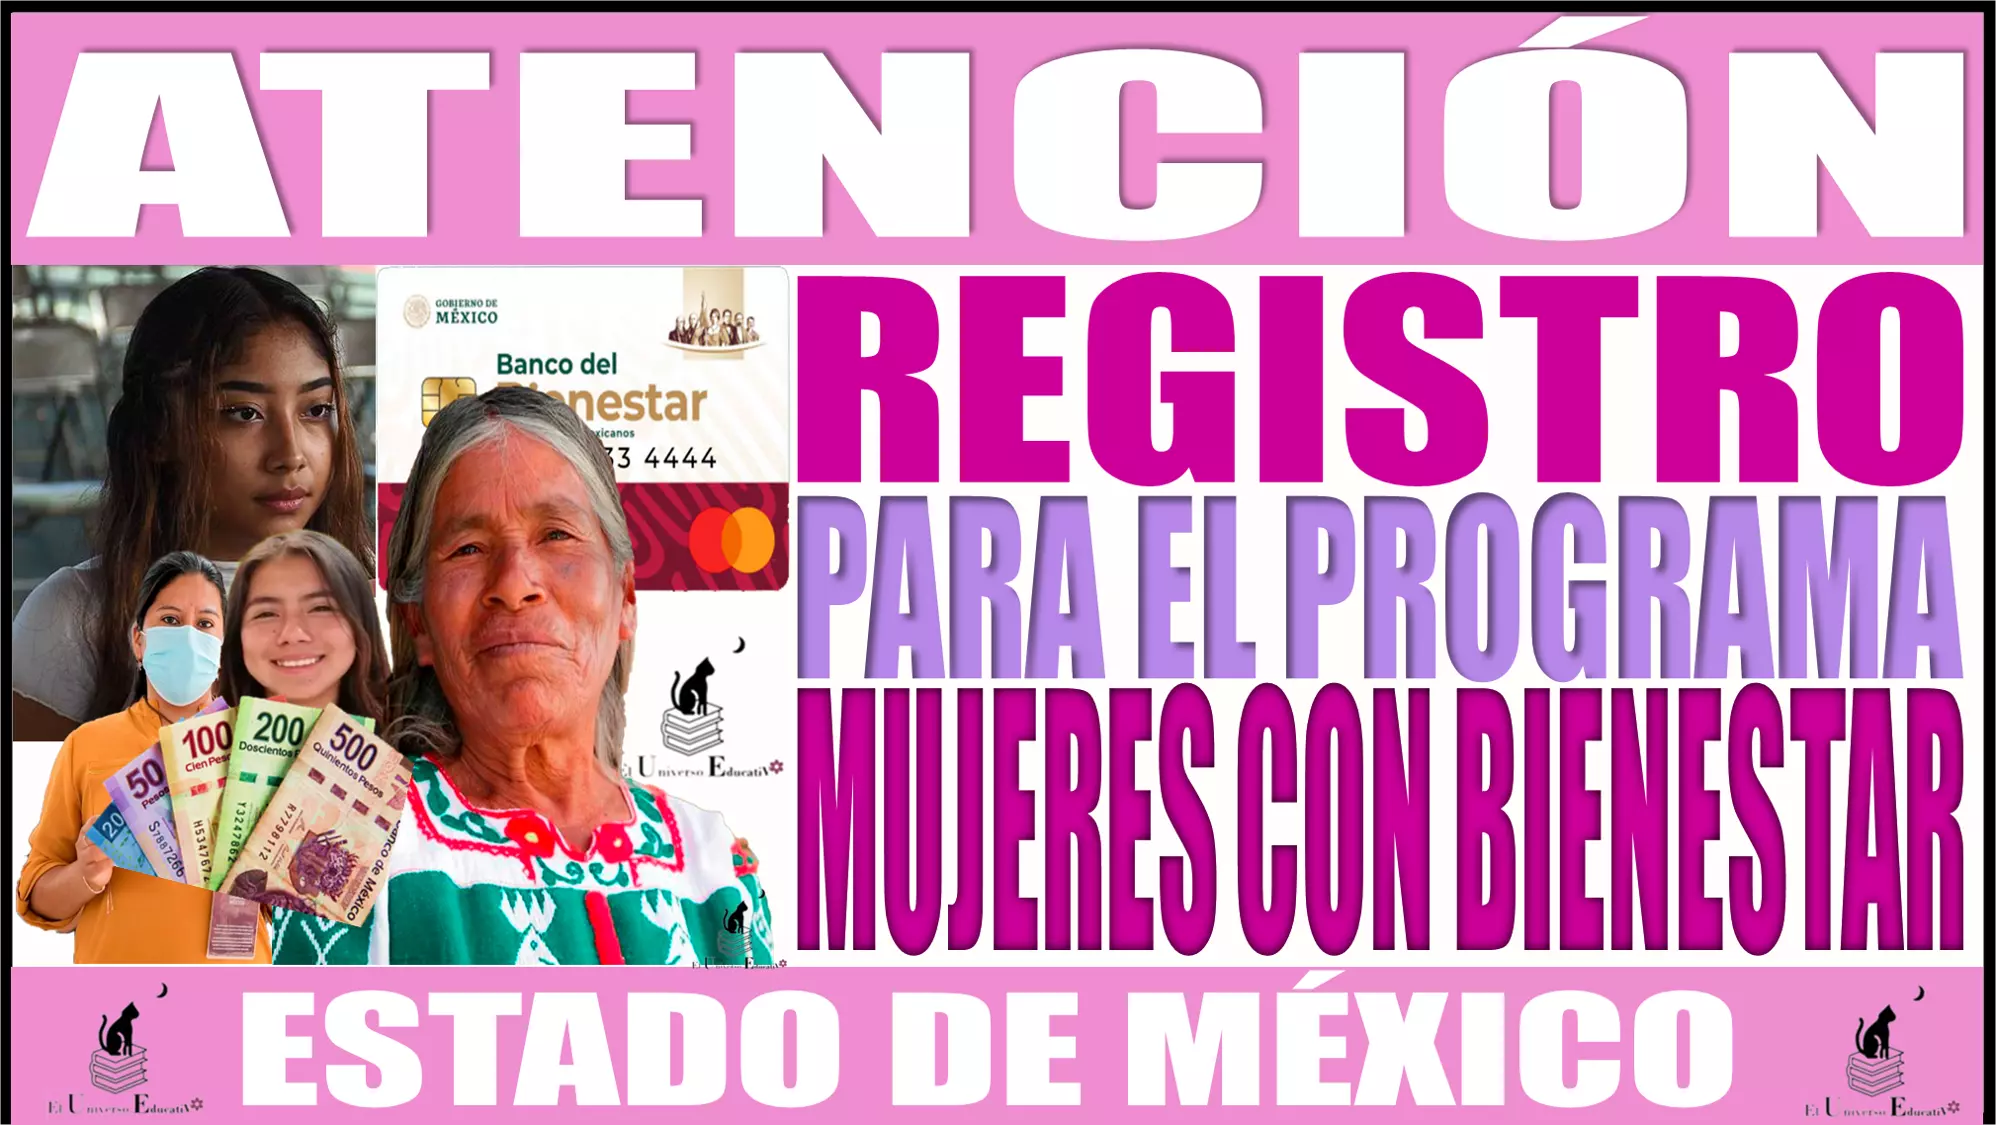 ❗❗ Atención ❗❗ 👩‍🦰👩‍🦱👩🏾‍🦱👩🏾‍🦳💥¿Cómo puedes registrarte al Programa de Mujeres con Bienestar en el Estado de México? 👩‍🦰👩‍🦱👩🏾‍🦱👩🏾‍🦳💥💥